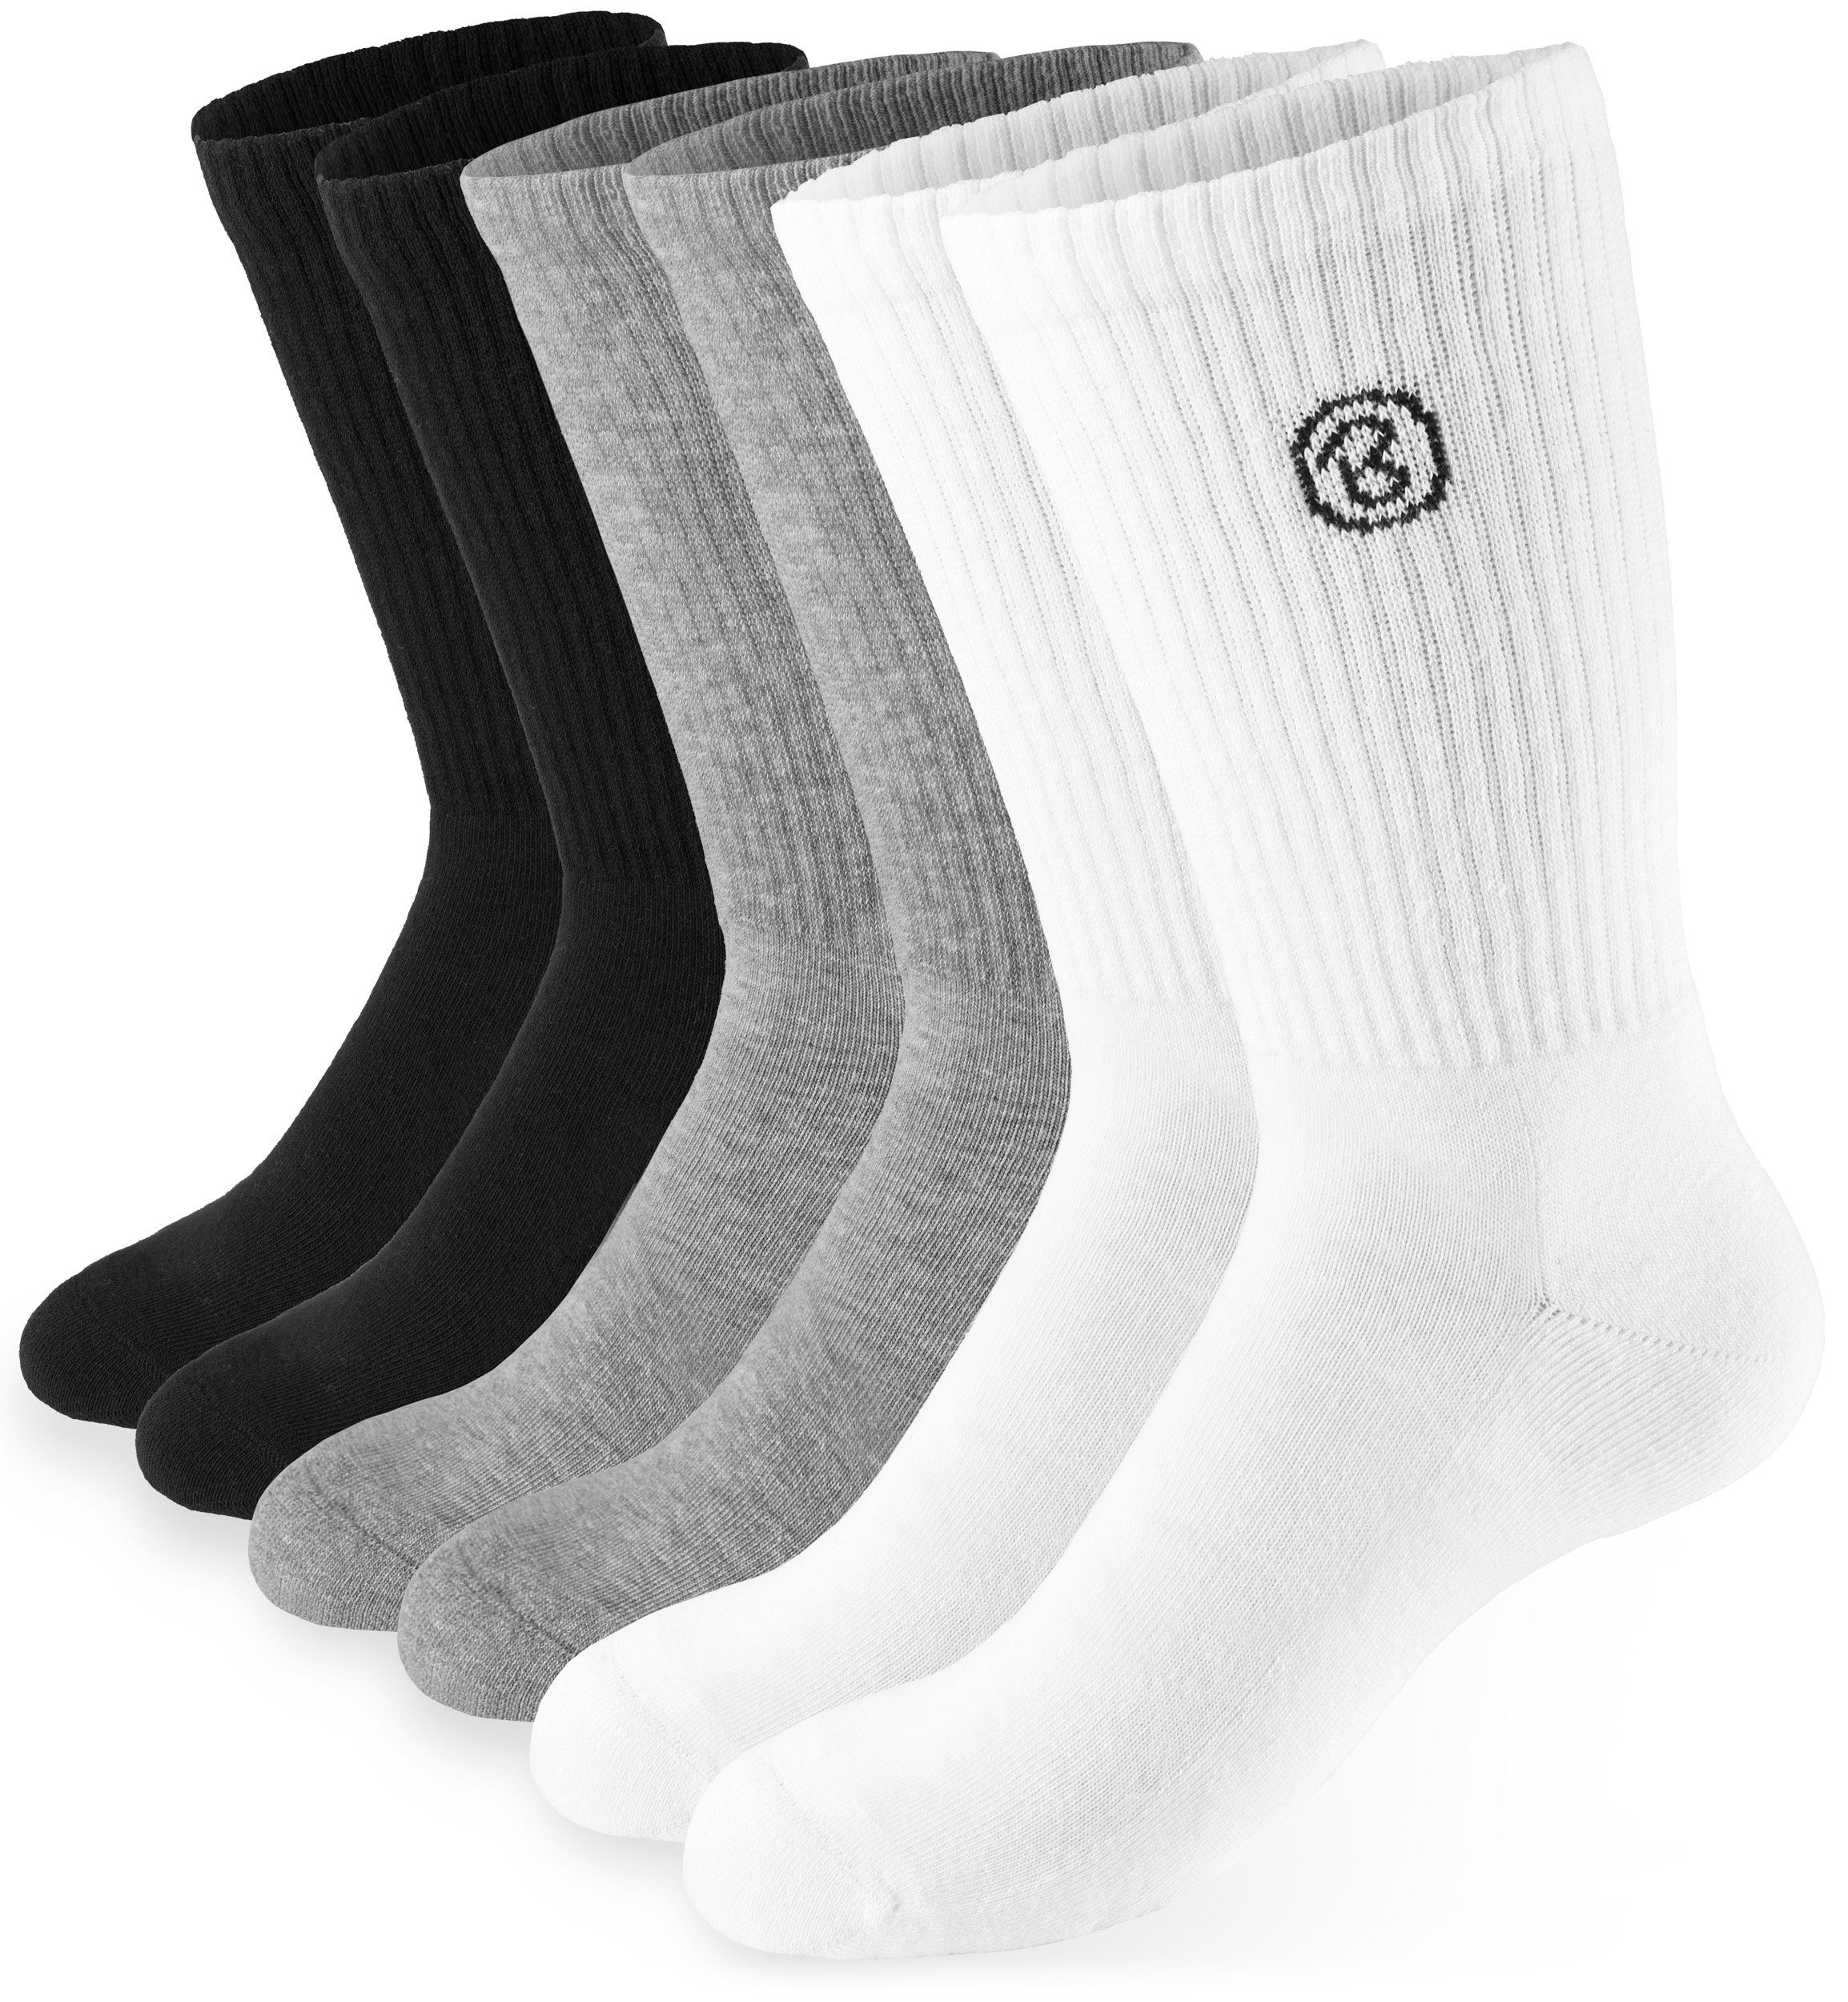 Socken Fitness und - - Tennissocken 6 aus Baumwollsocken Lange Damen Baumwolle Paar) für Polyester Sportsocken Unisex BRUBAKER Herren Crew Farbmix Socks (Set, und